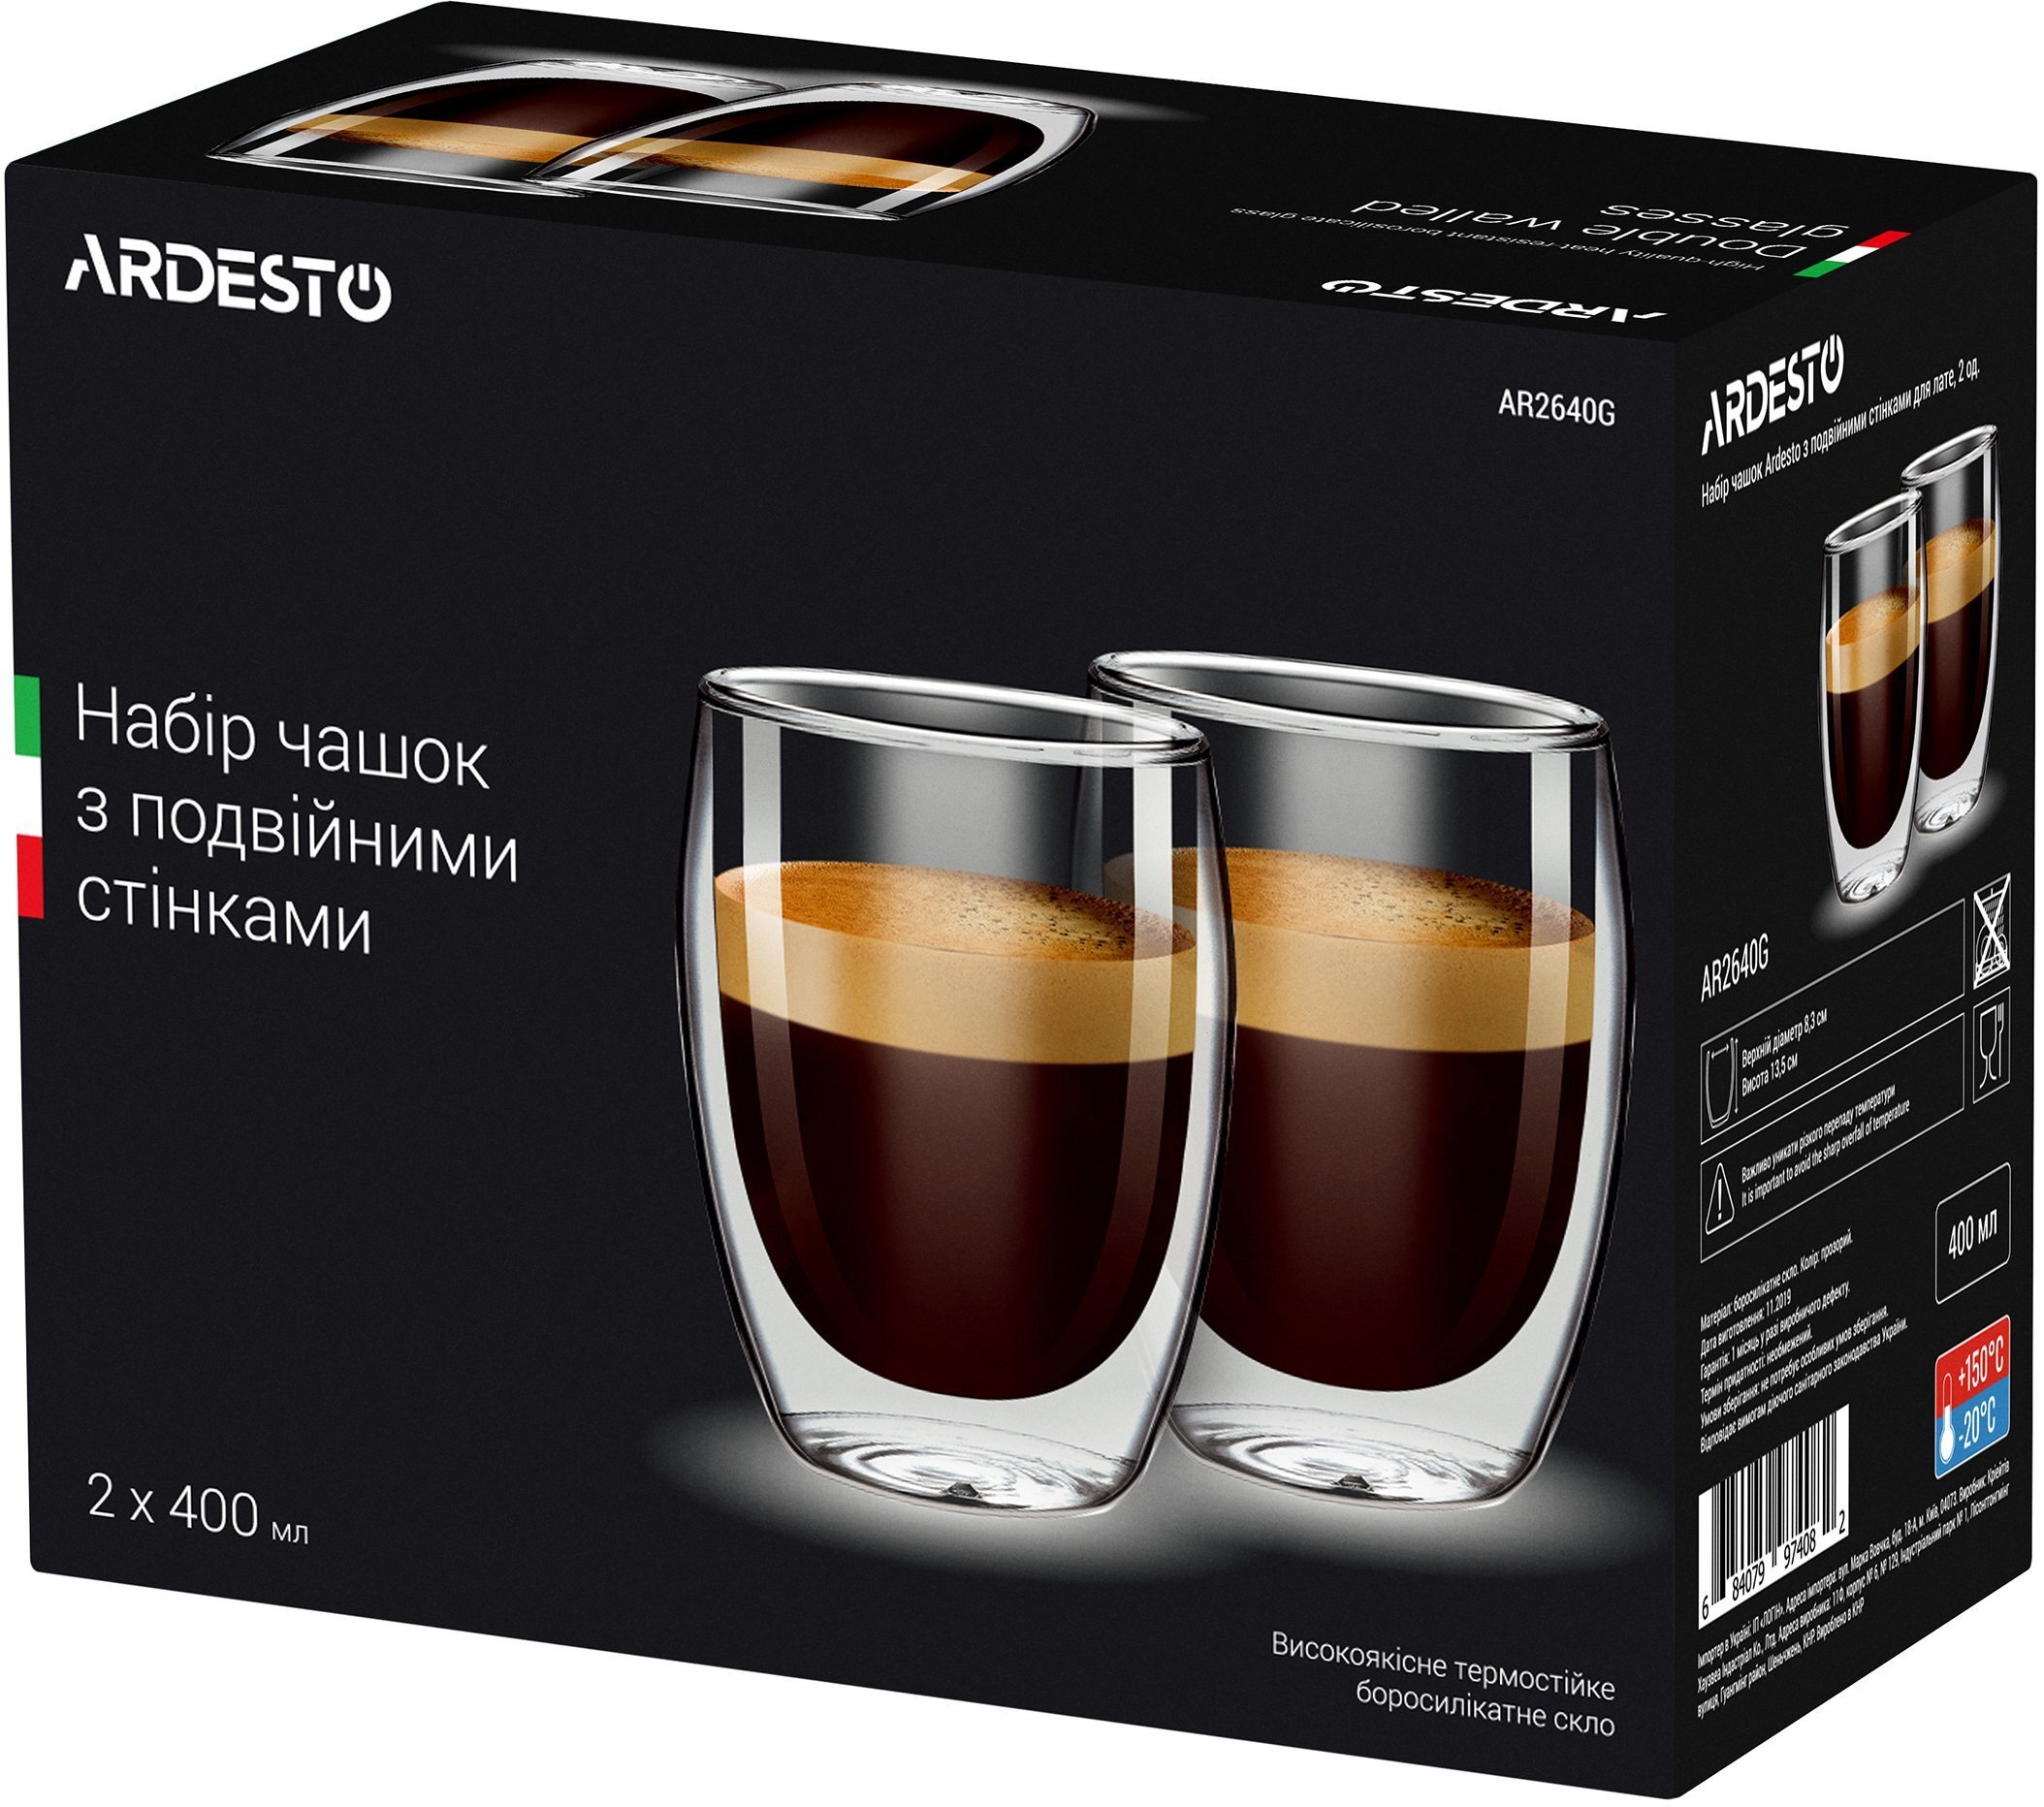  Набір чашок Ardesto з подвійними стінками для латте, 400 мл, 2 шт. AR2640G фото1